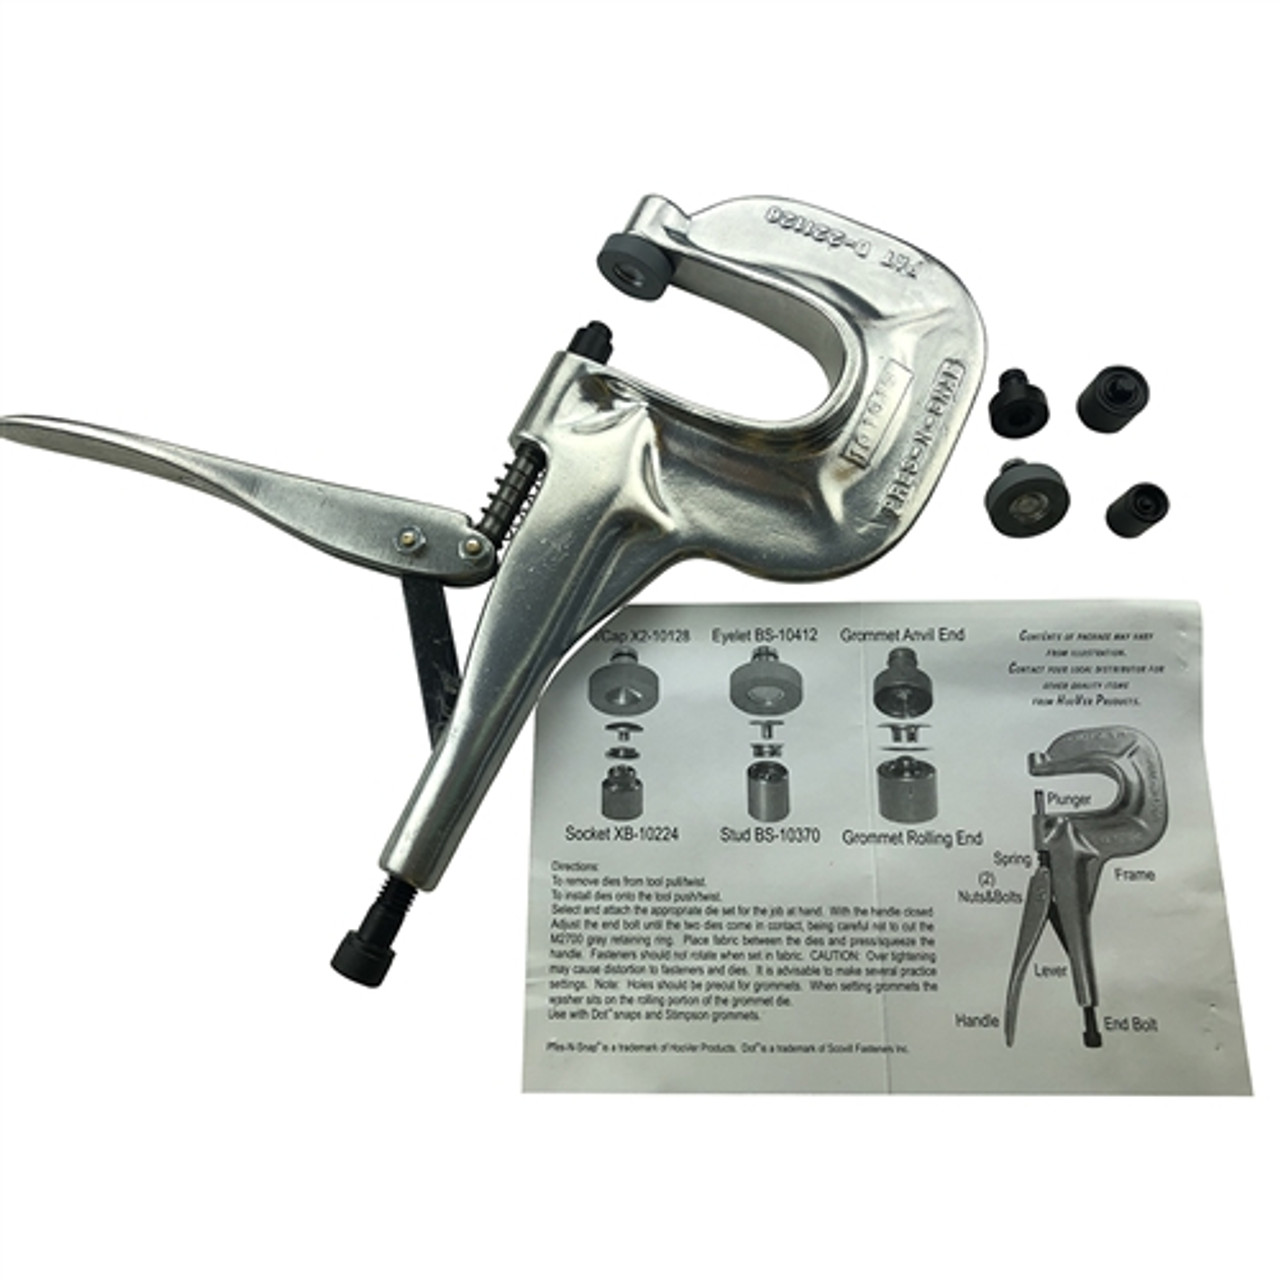 Hoover Pres-N-Snap Tool Complete Kit